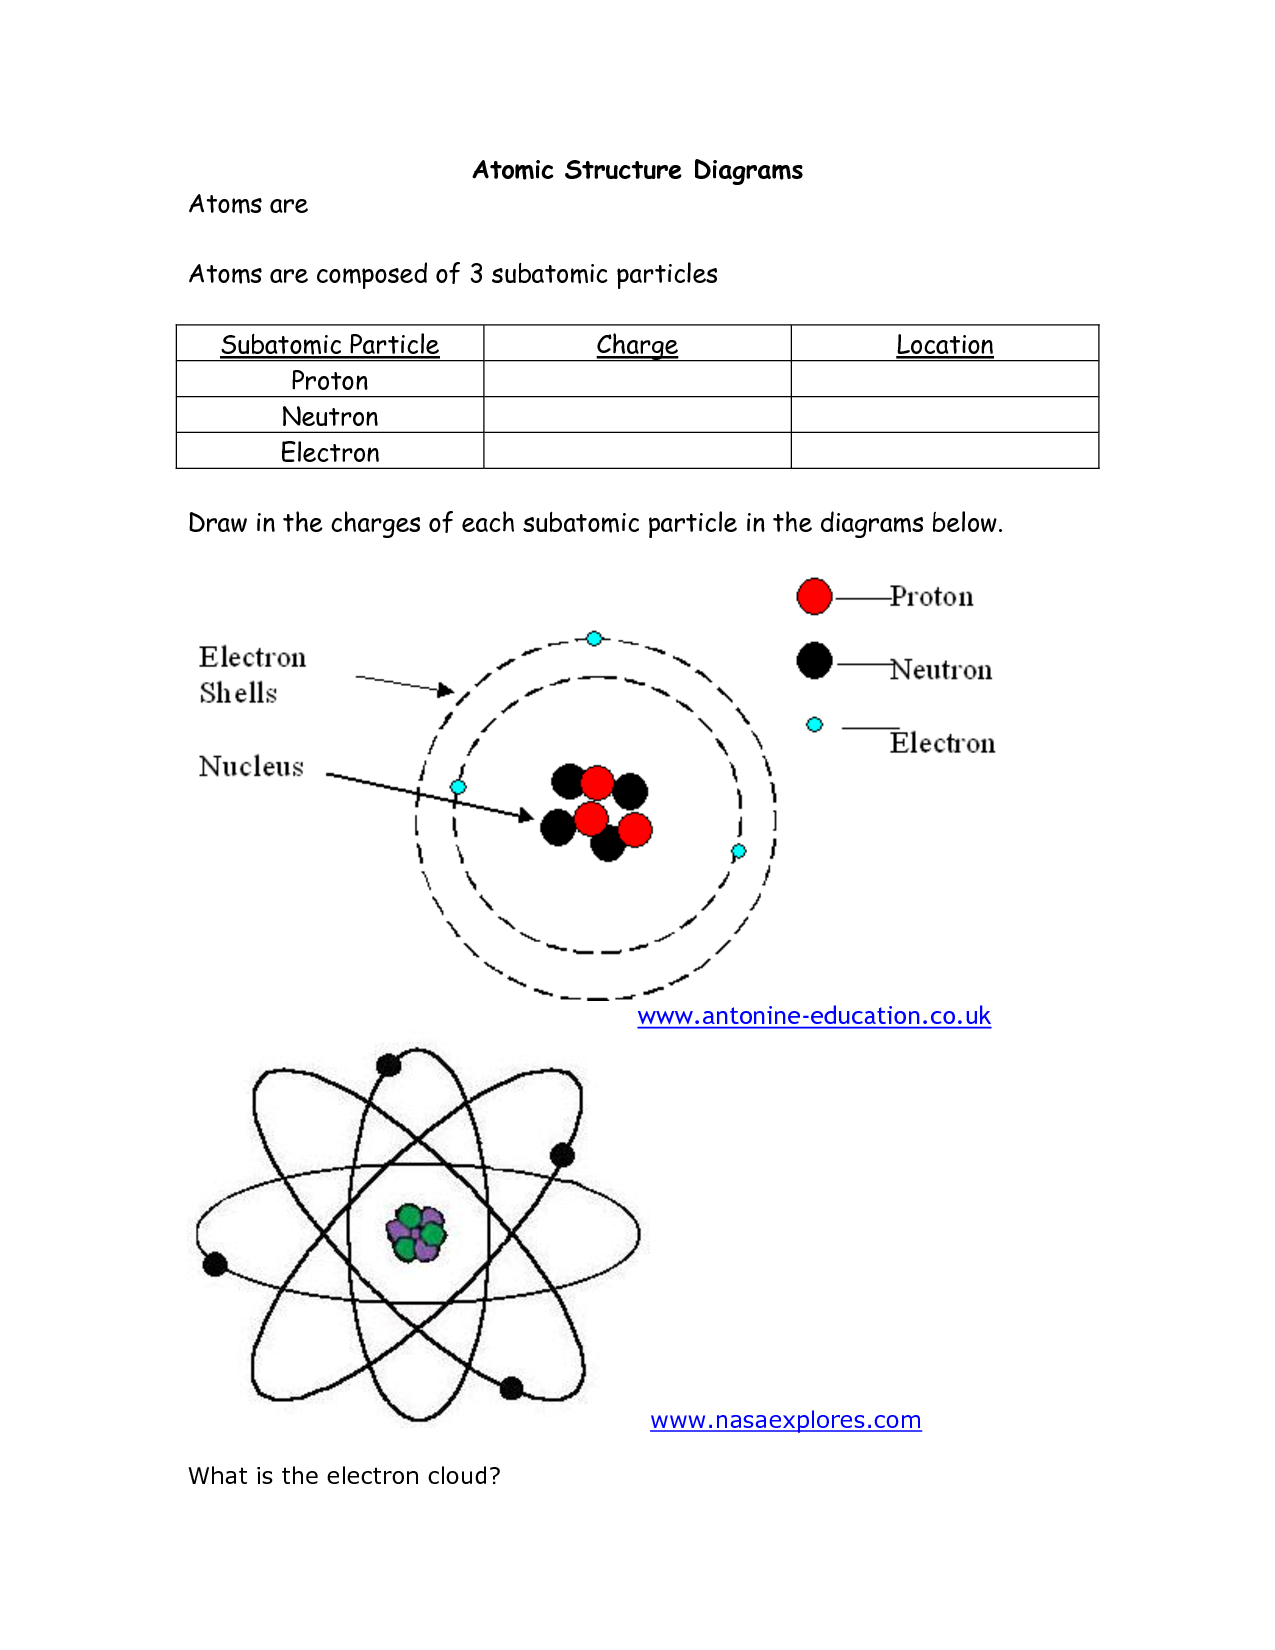 Atomic Structure Diagram Worksheet Atomic Structure Diagrams Atomic 